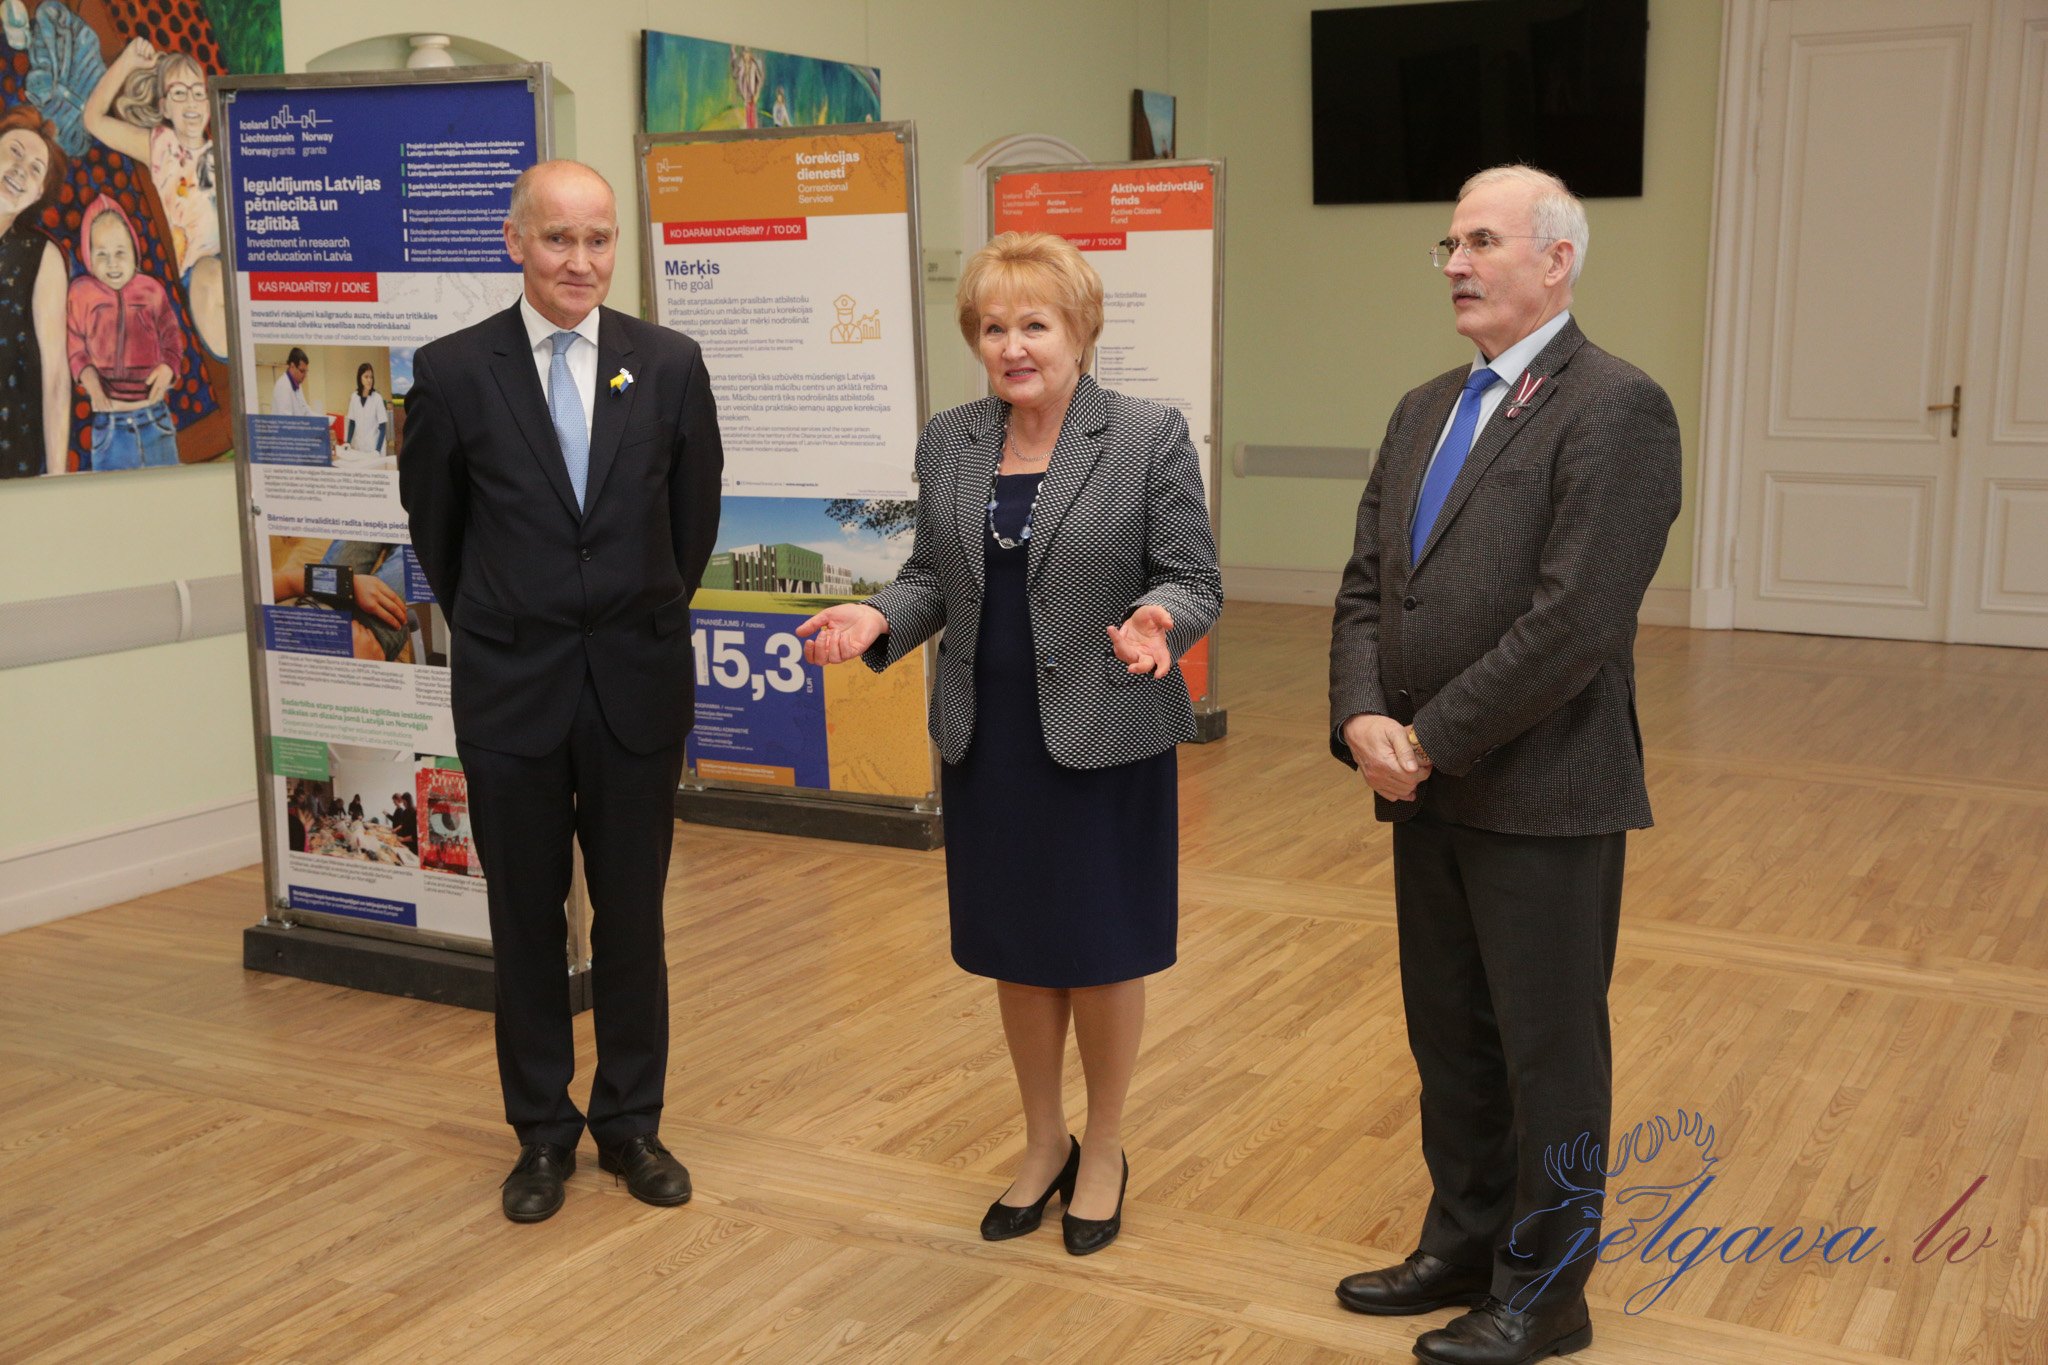 Norsk ambassadør i Latvia besøker Jelgava